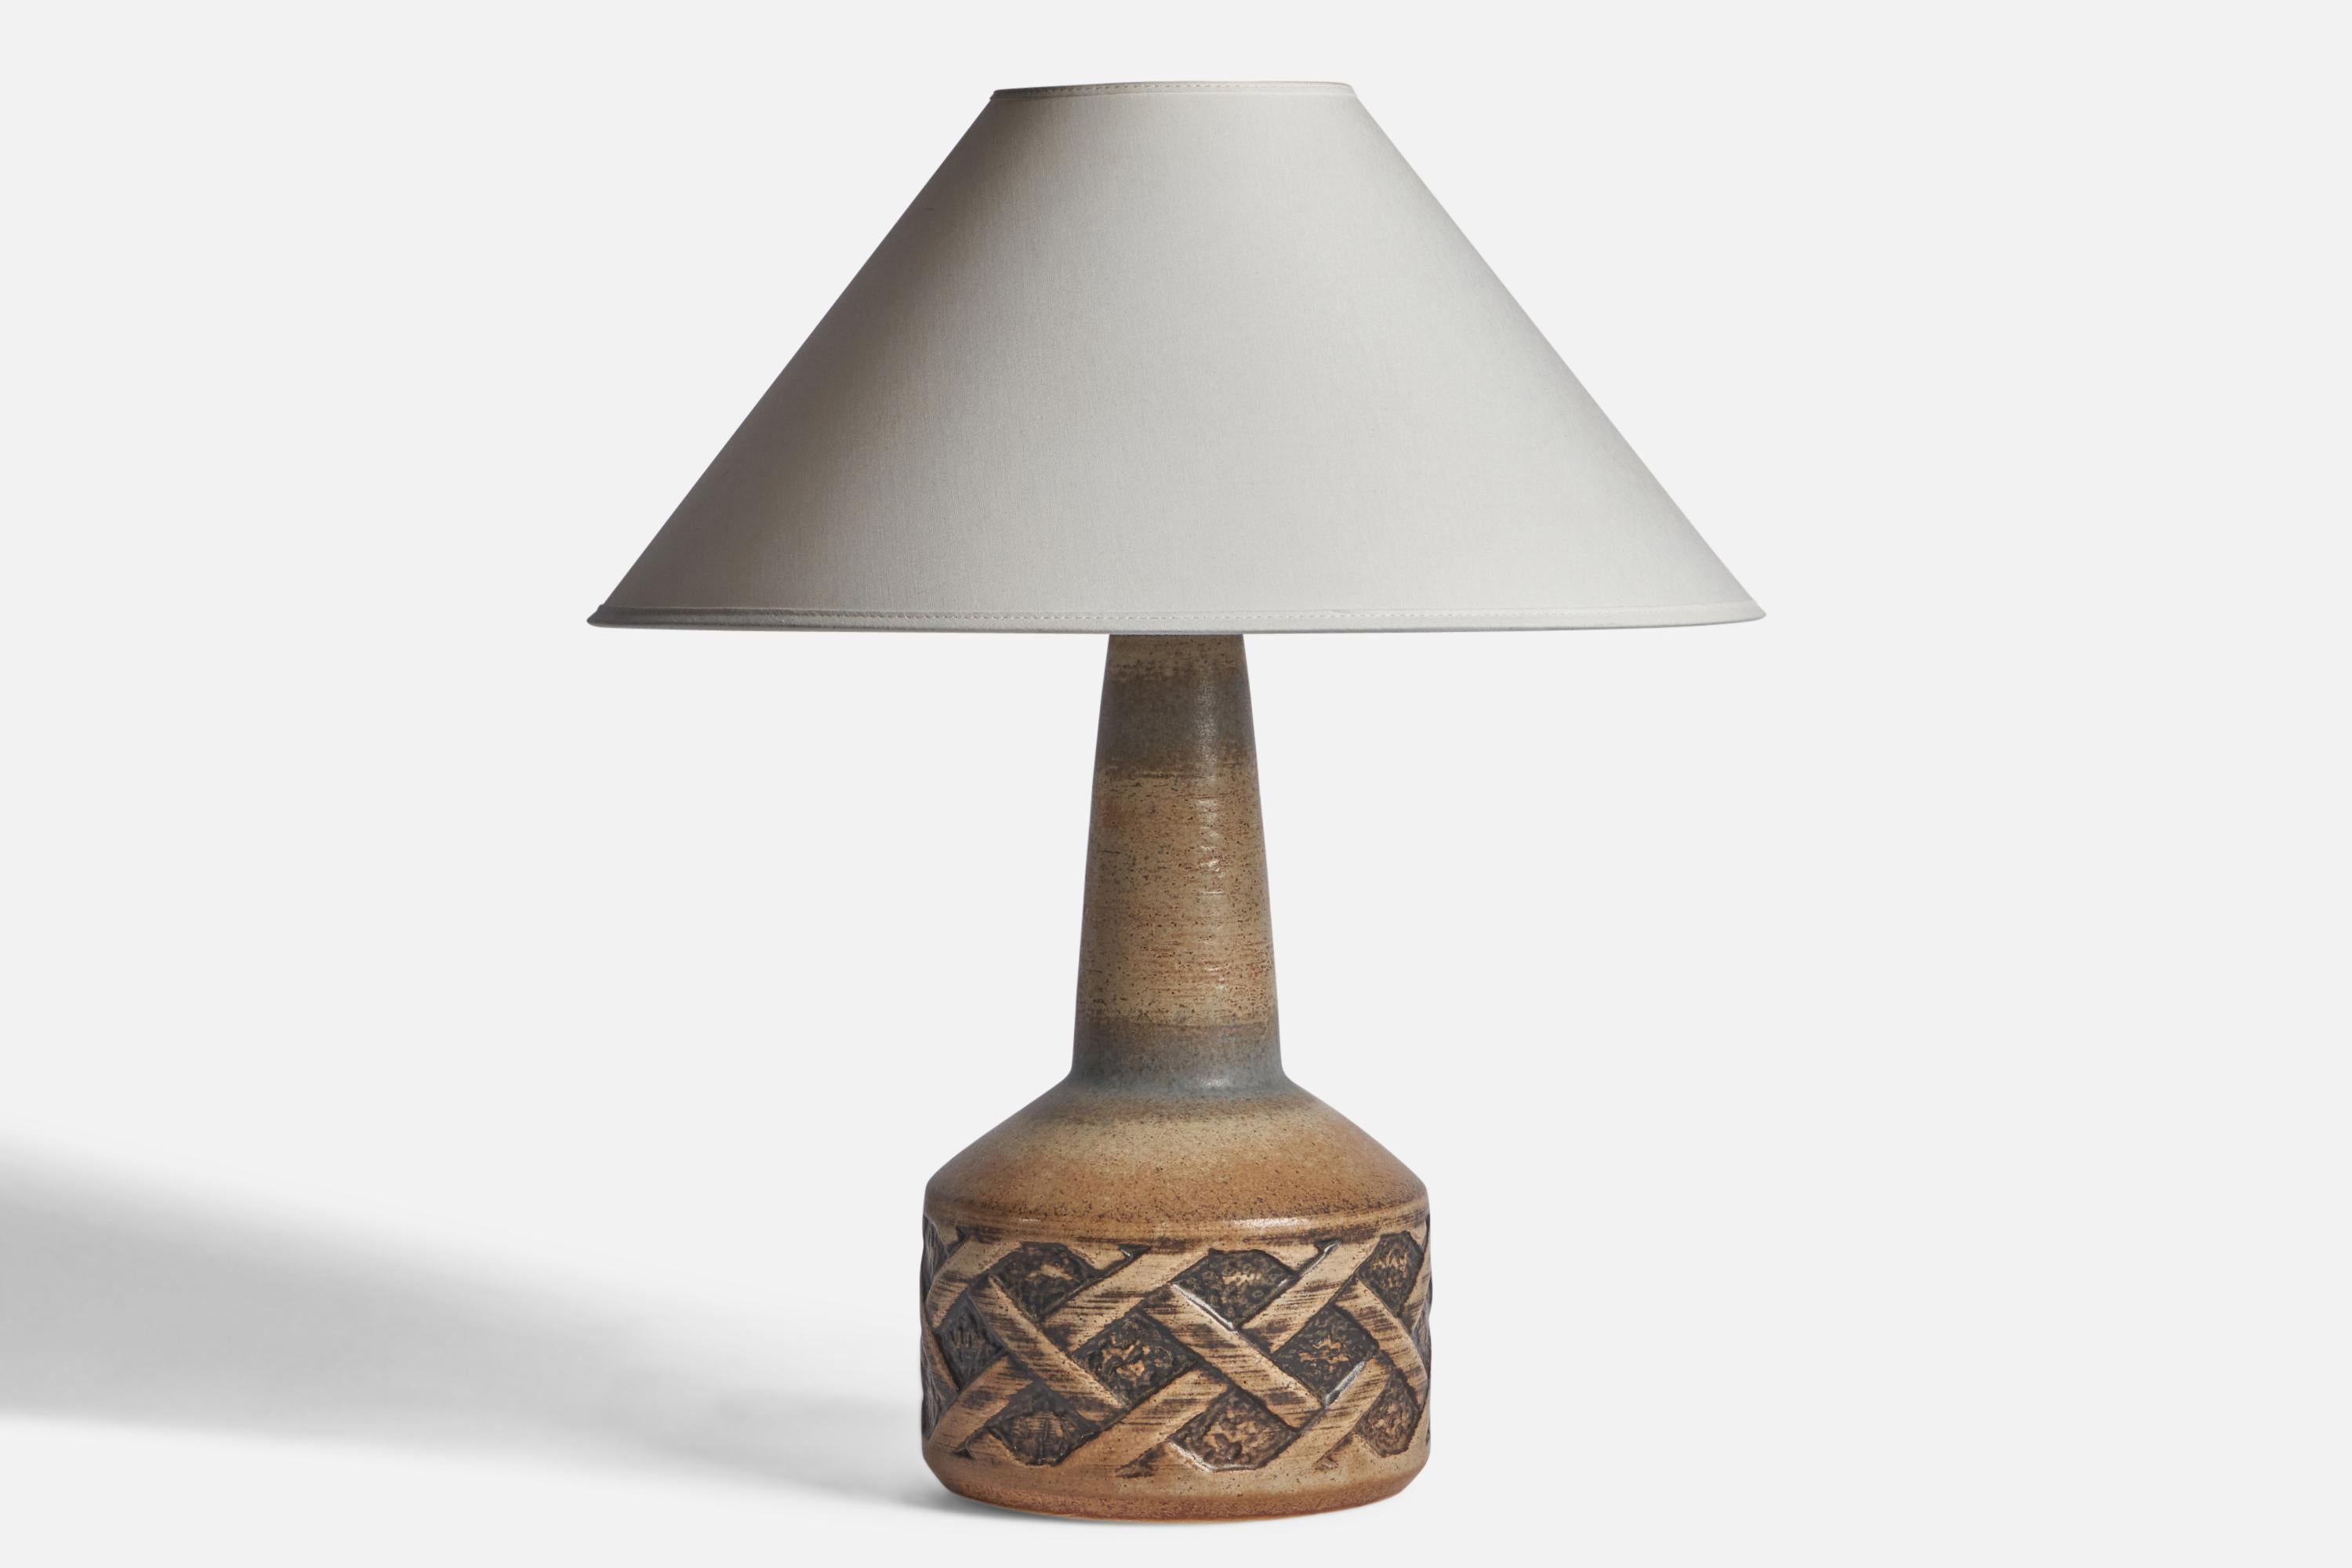 Lampe de table en grès émaillé gris et brun, conçue et produite par Søholm, Bornholm, Danemark, c.C. 1960.

Estampille 